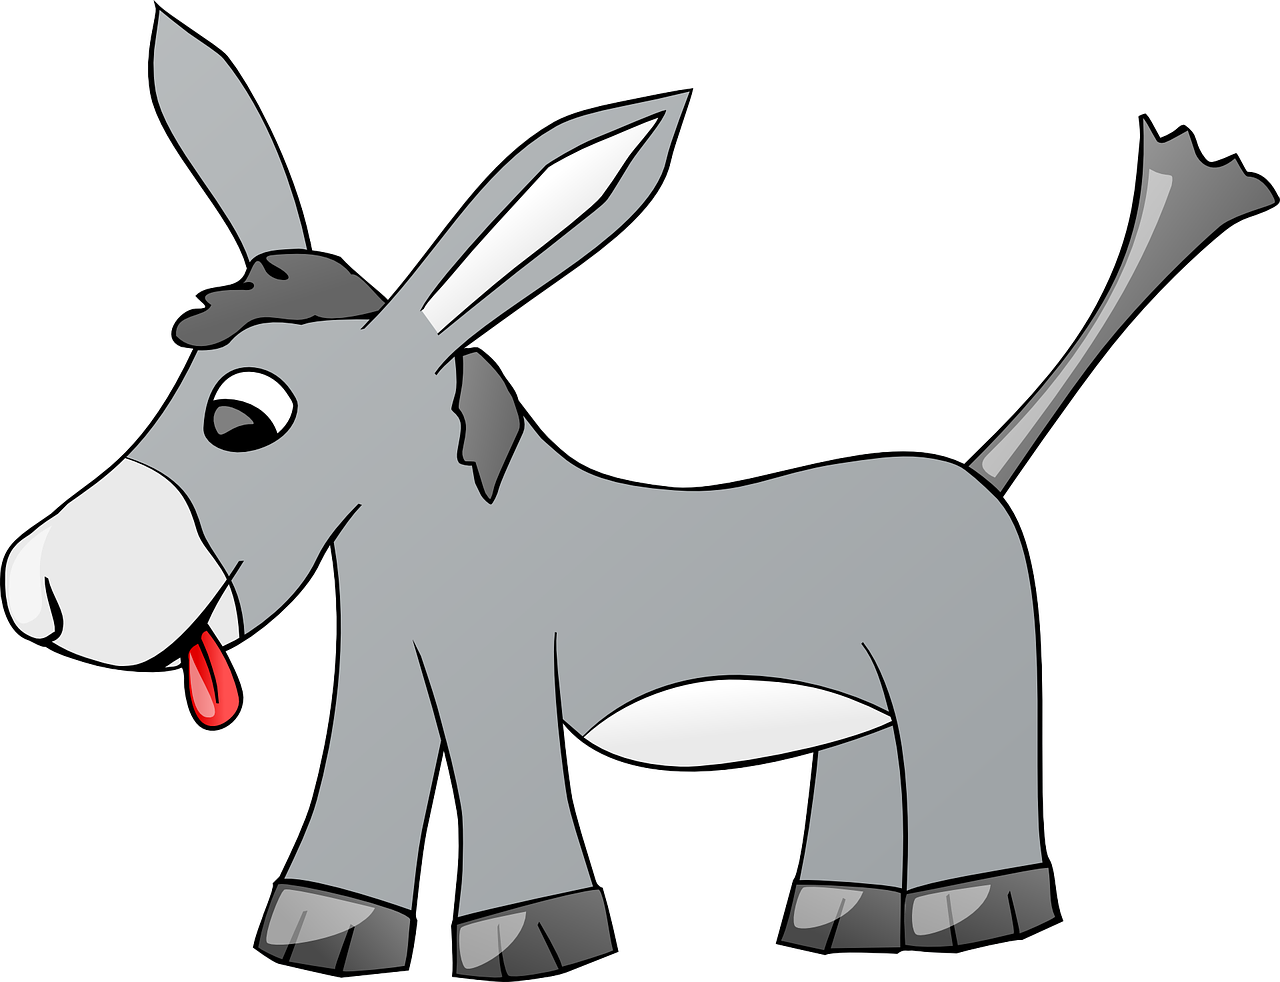 donkey clipart gray